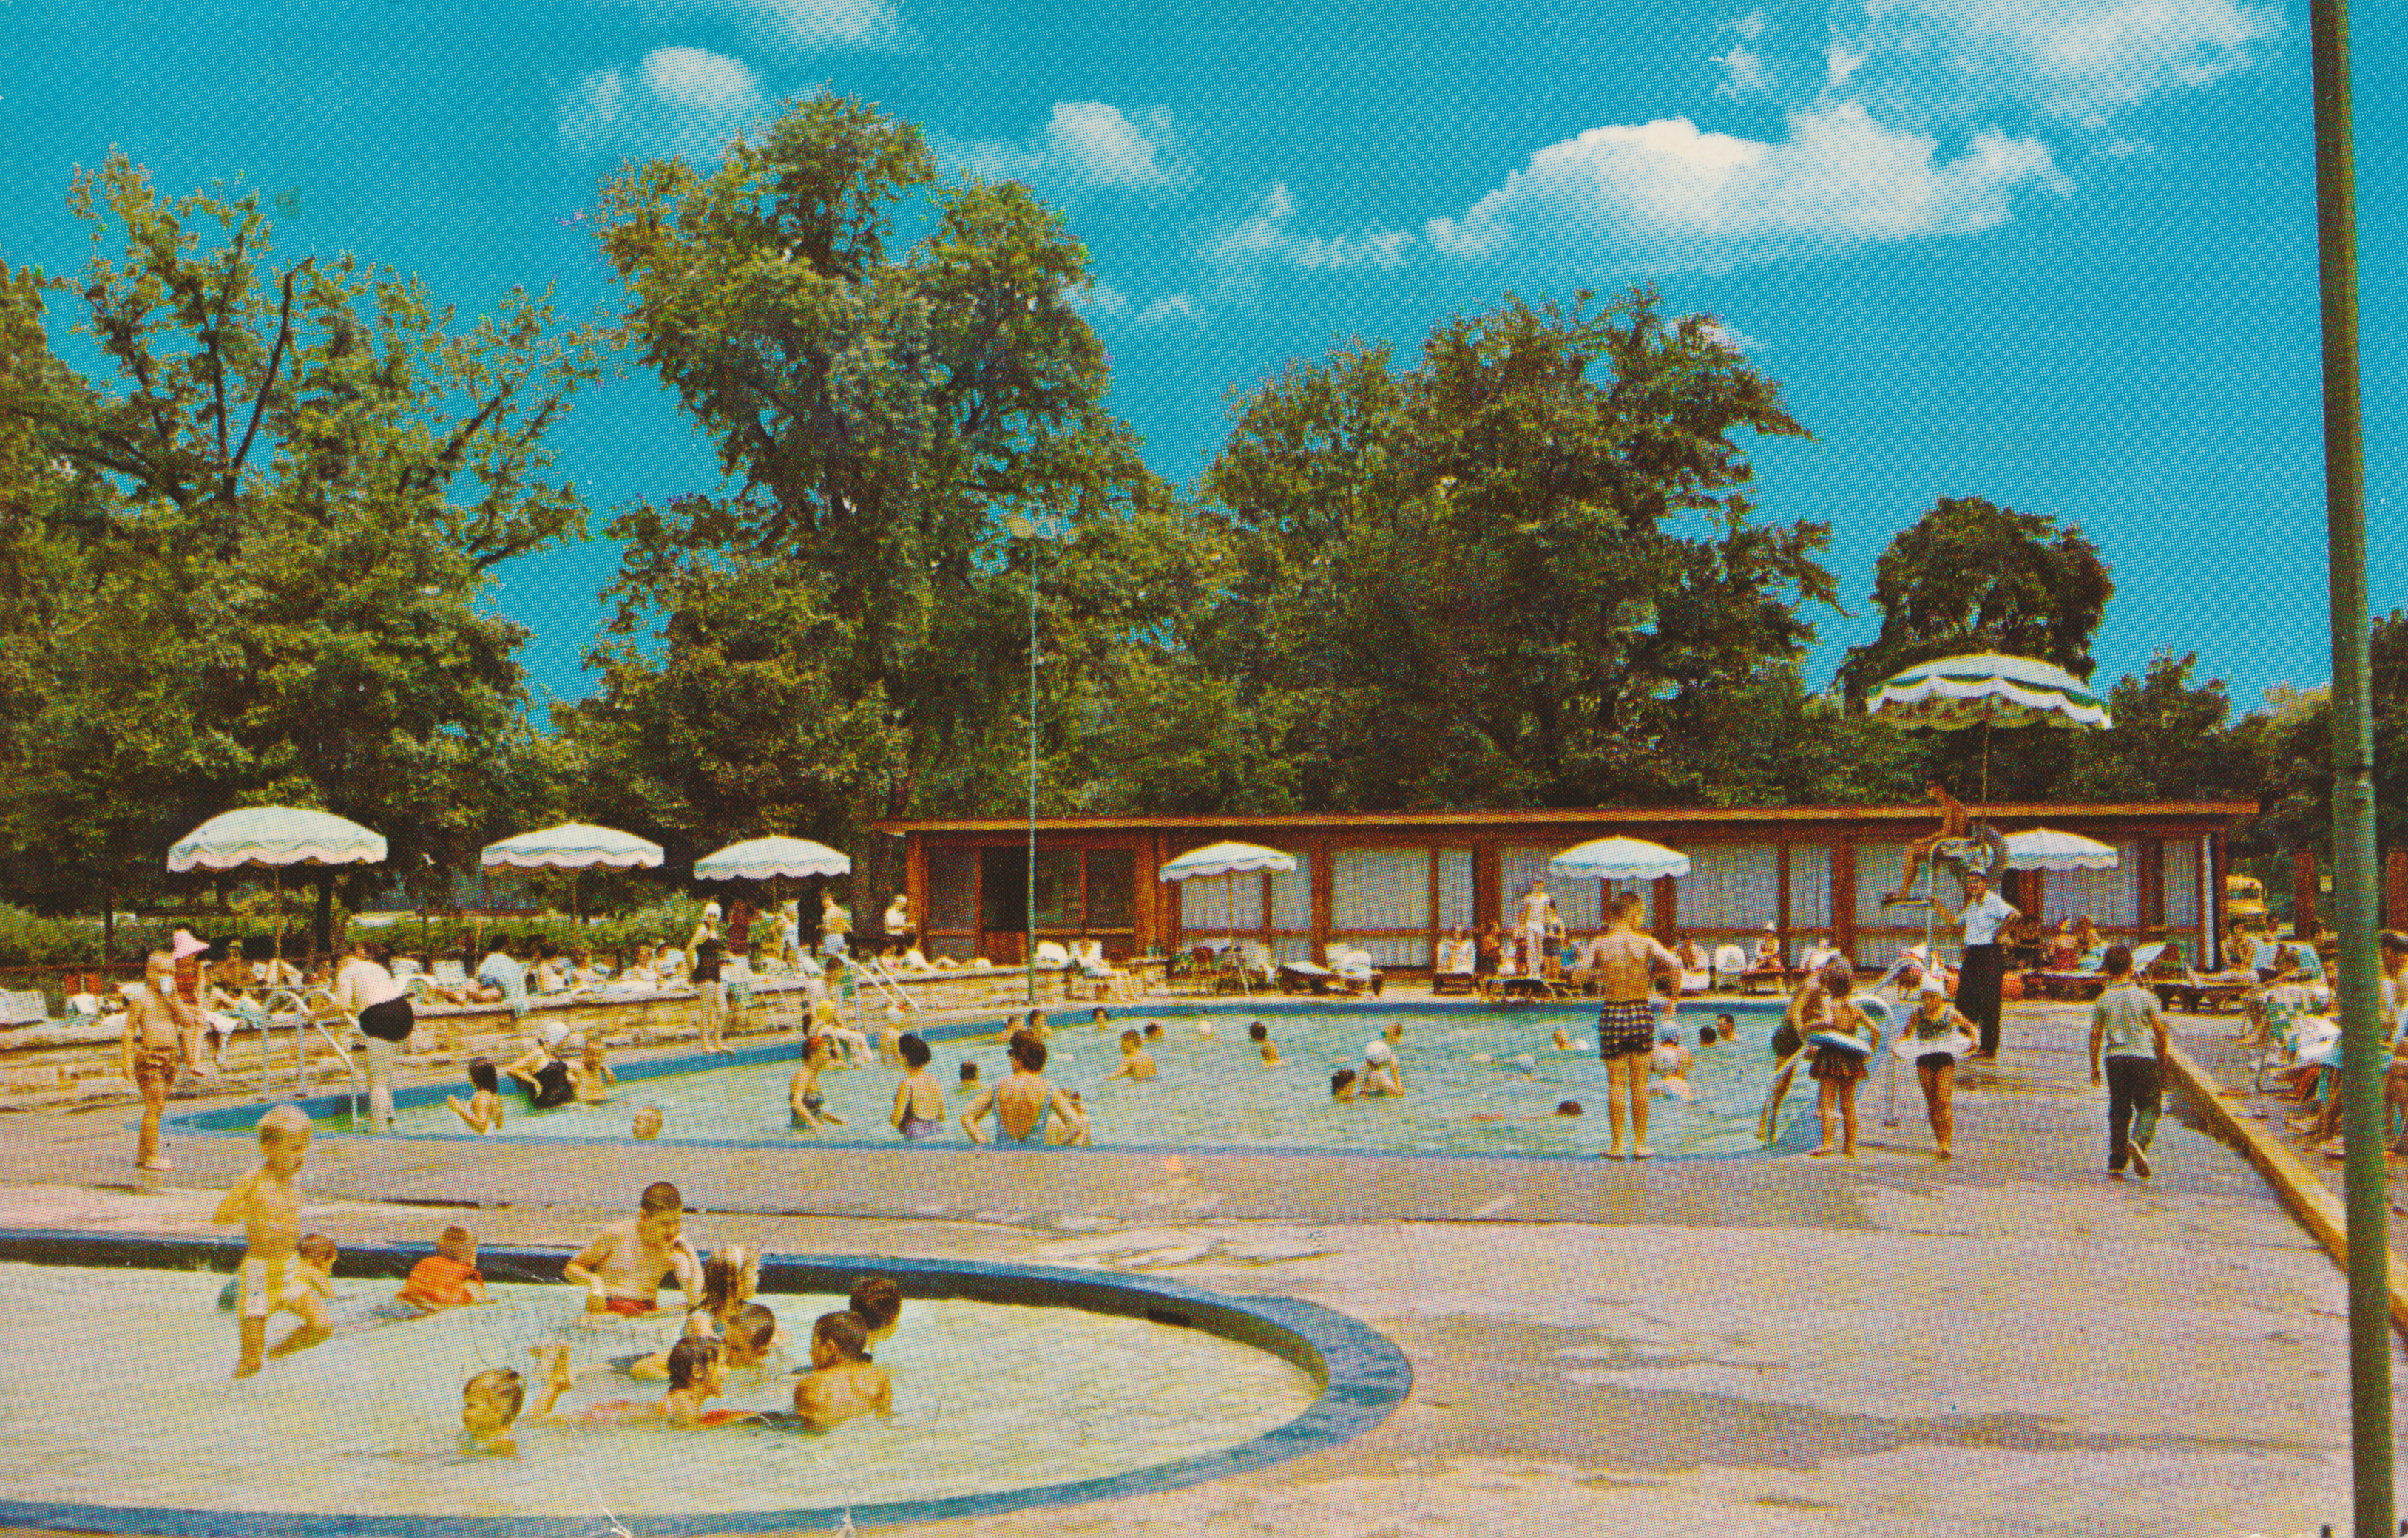 Historic Pools at French Lick Resort